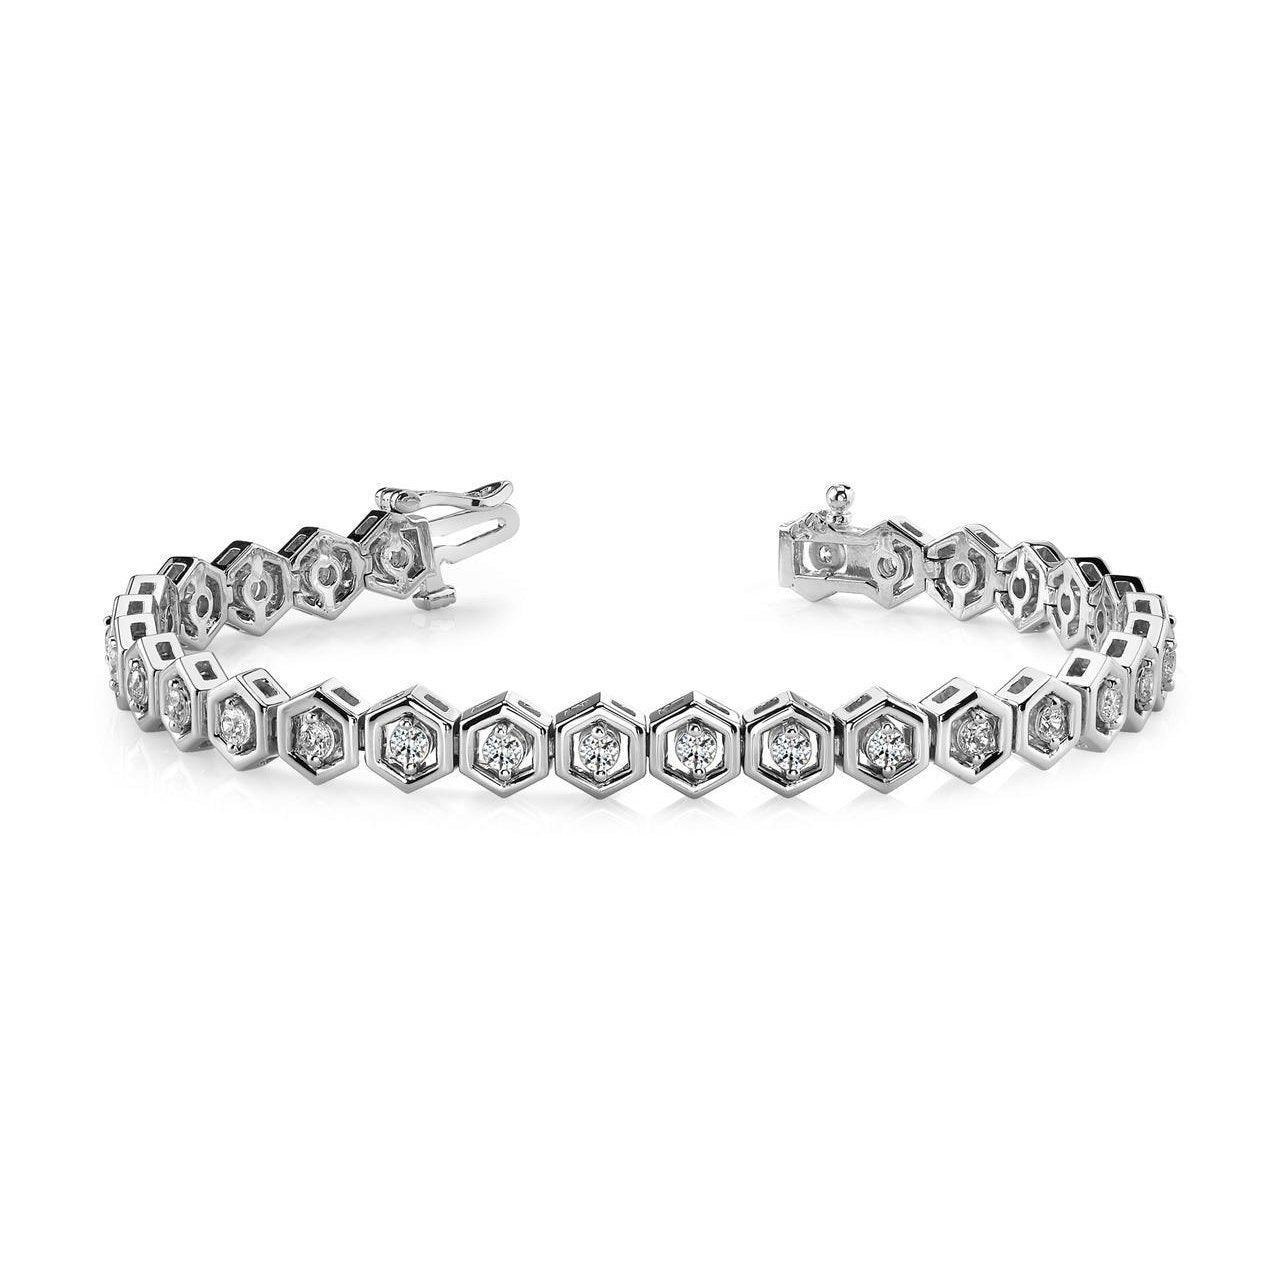 Splendido bracciale a maglie esagonali da 5 carati con due punte incastonate di diamanti rotondi - harrychadent.it